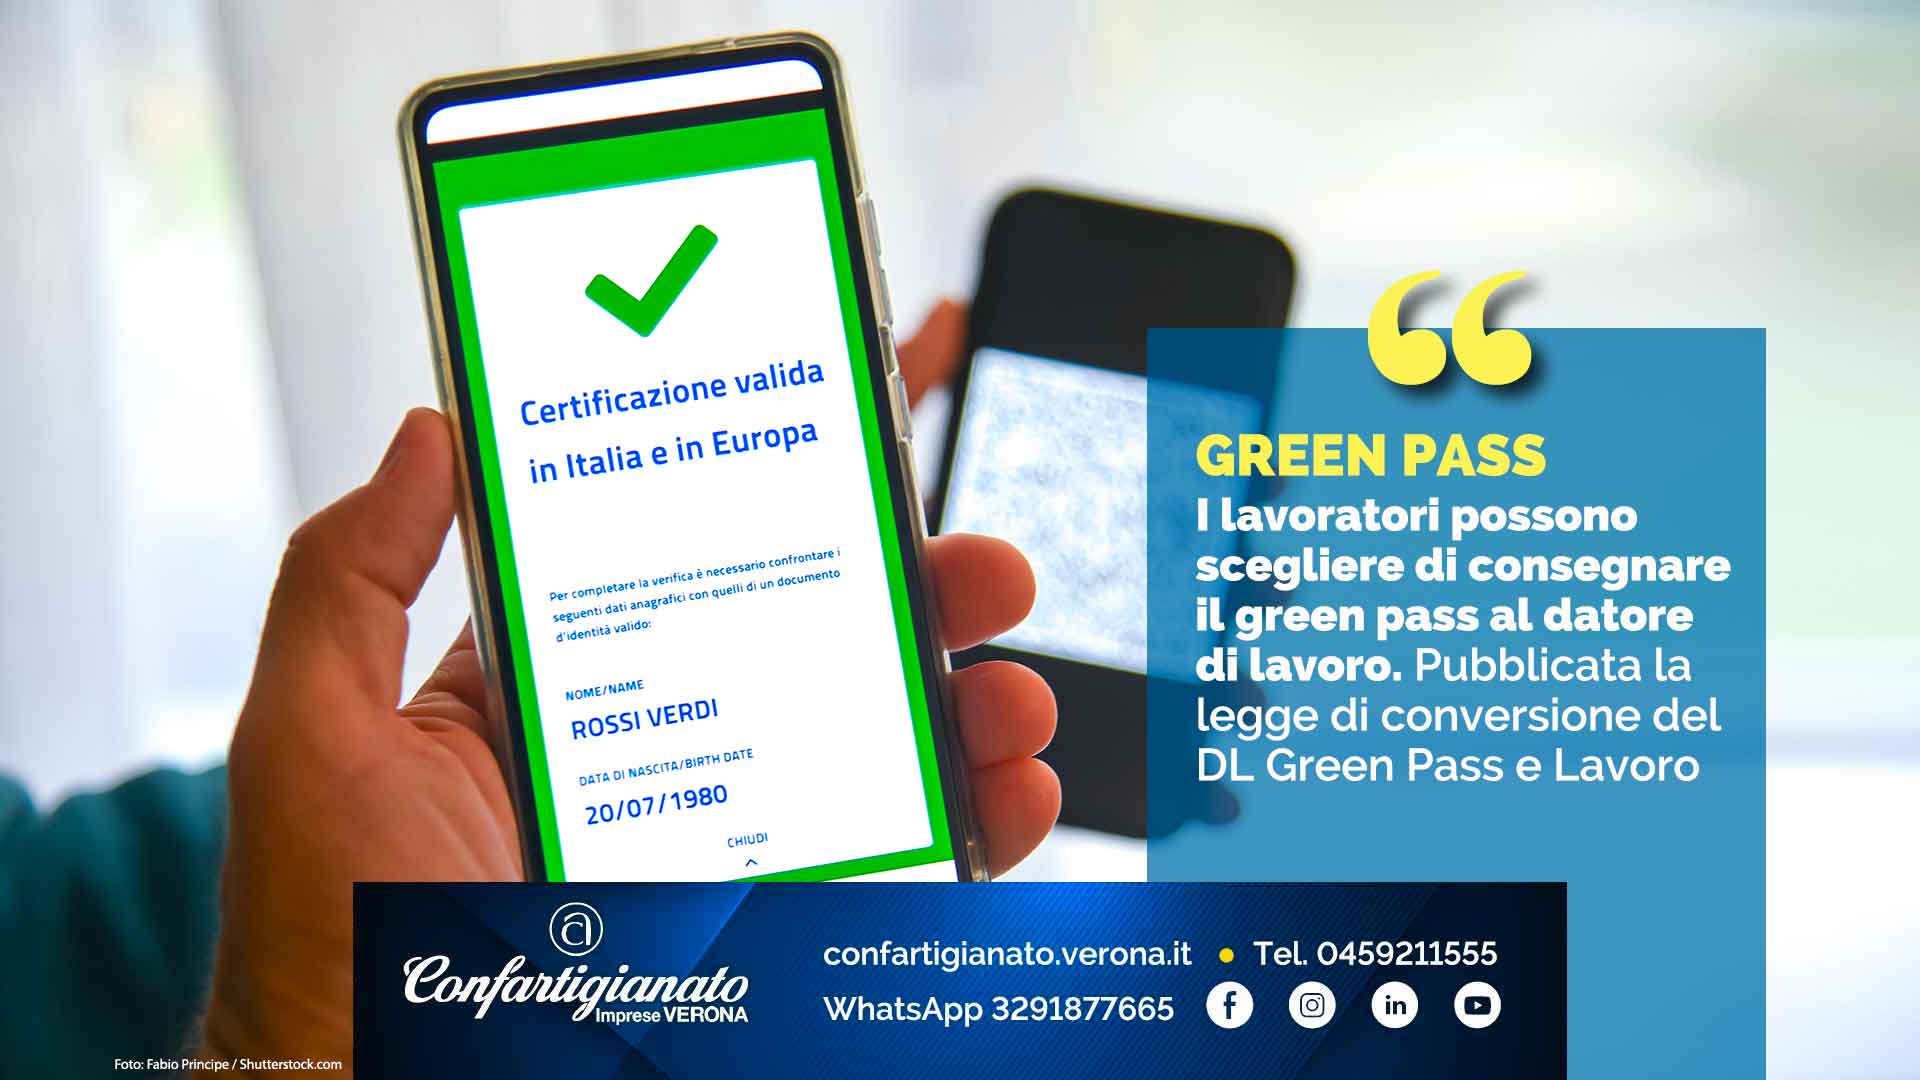 GREEN PASS – Lavoratori possono scegliere di consegnare il green pass al datore di lavoro. Pubblicata la legge di conversione del DL Green Pass e Lavoro